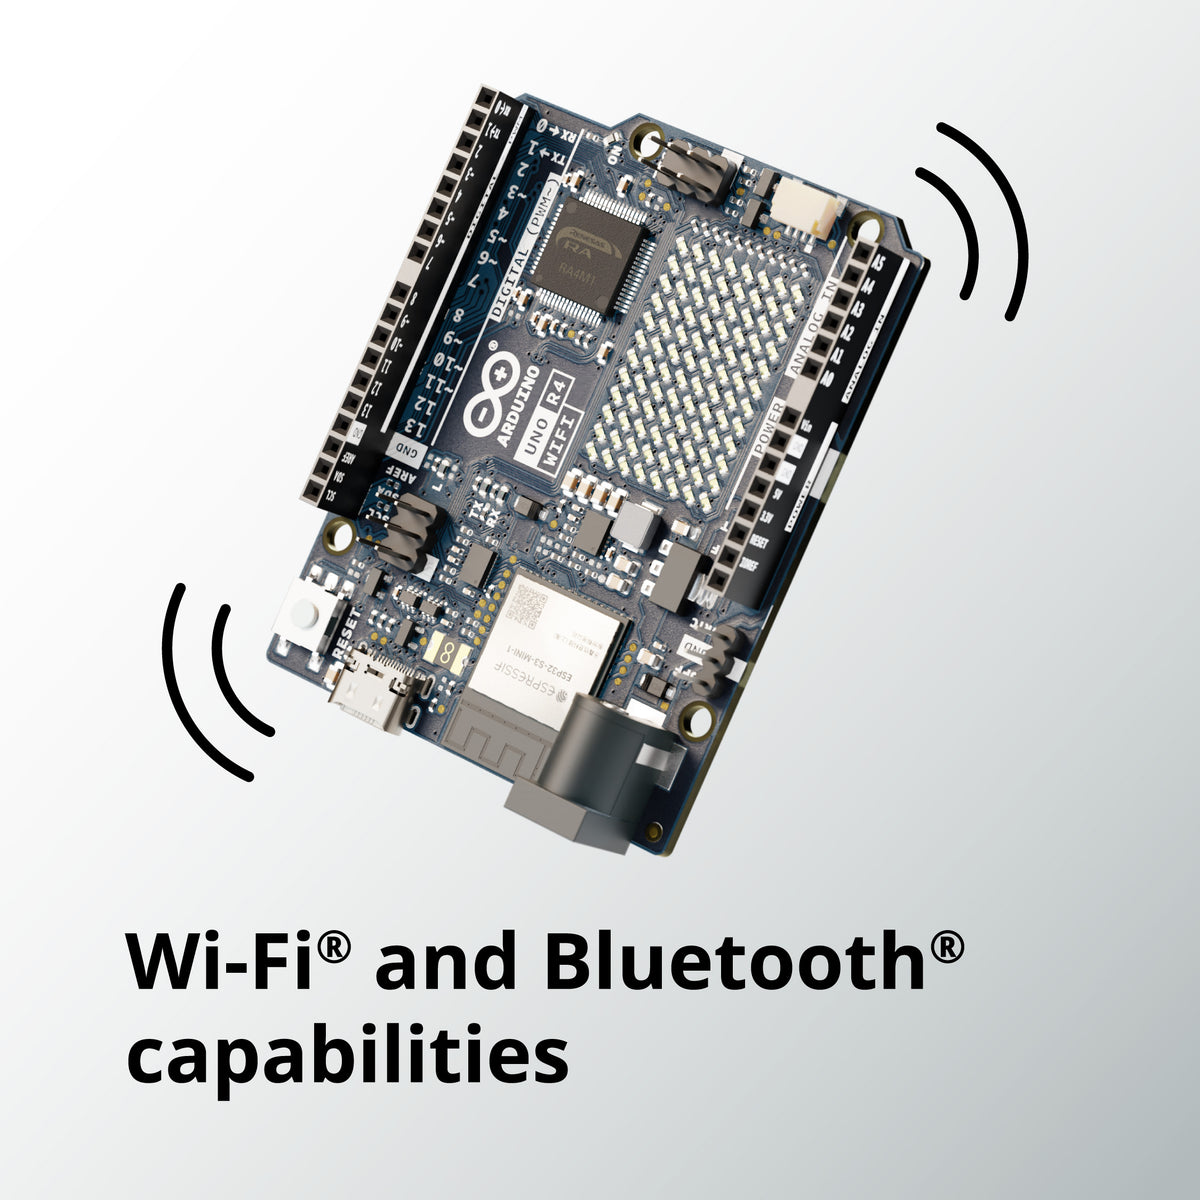 Arduino® UNO R4 WiFi